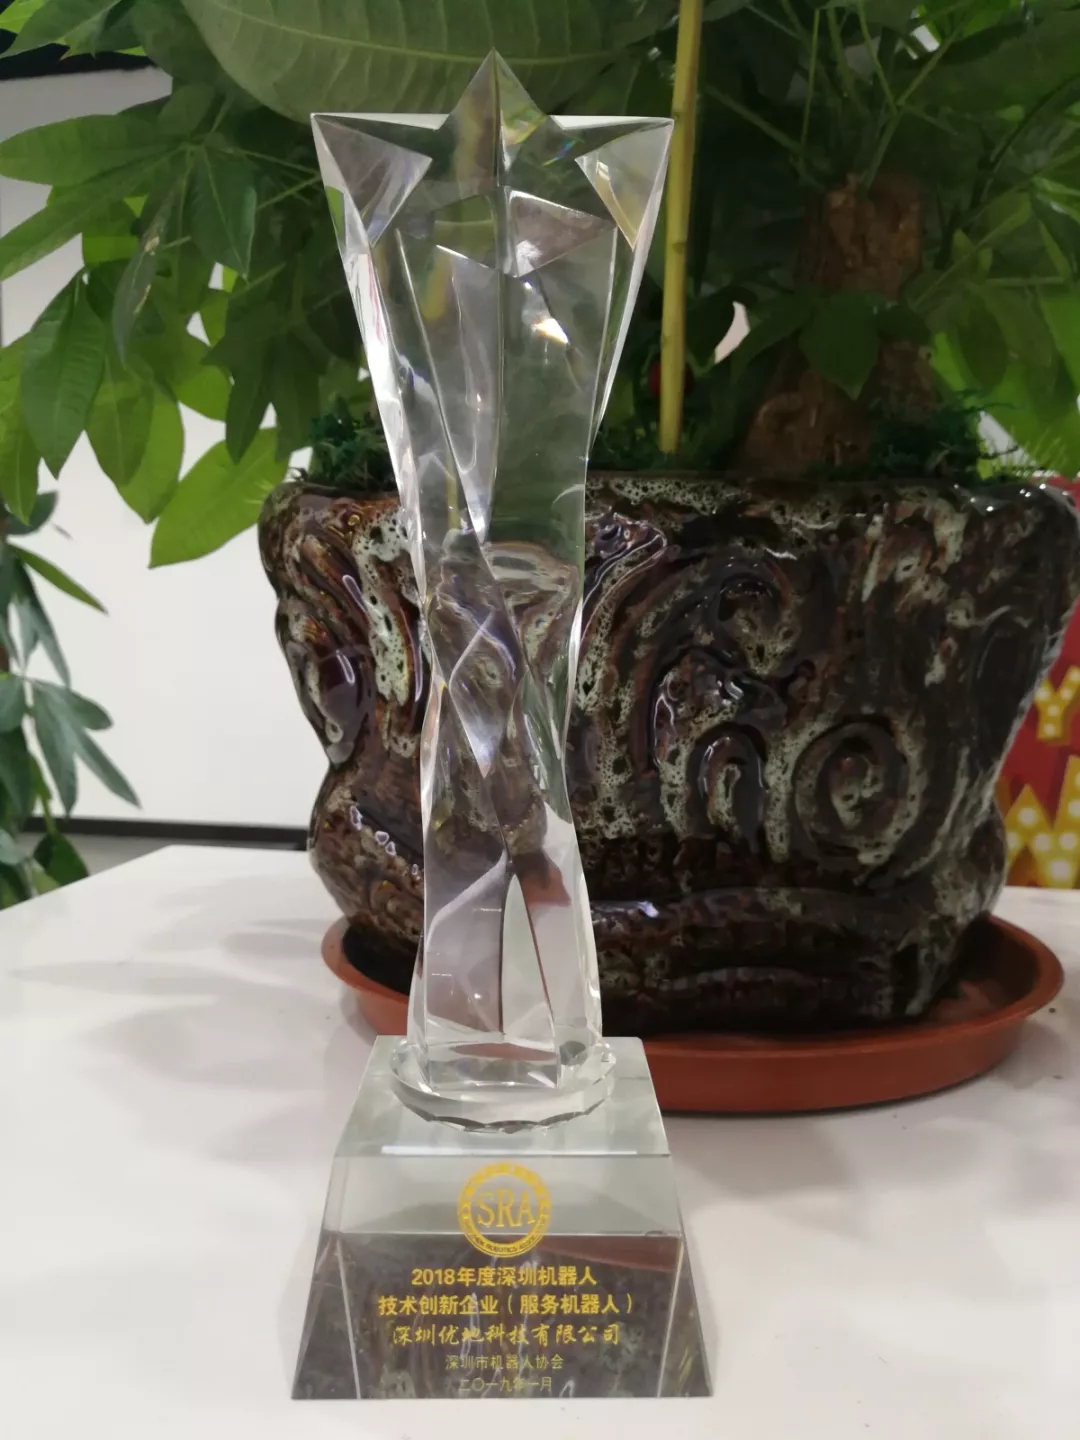 优地荣获年度技术创新企业奖杯